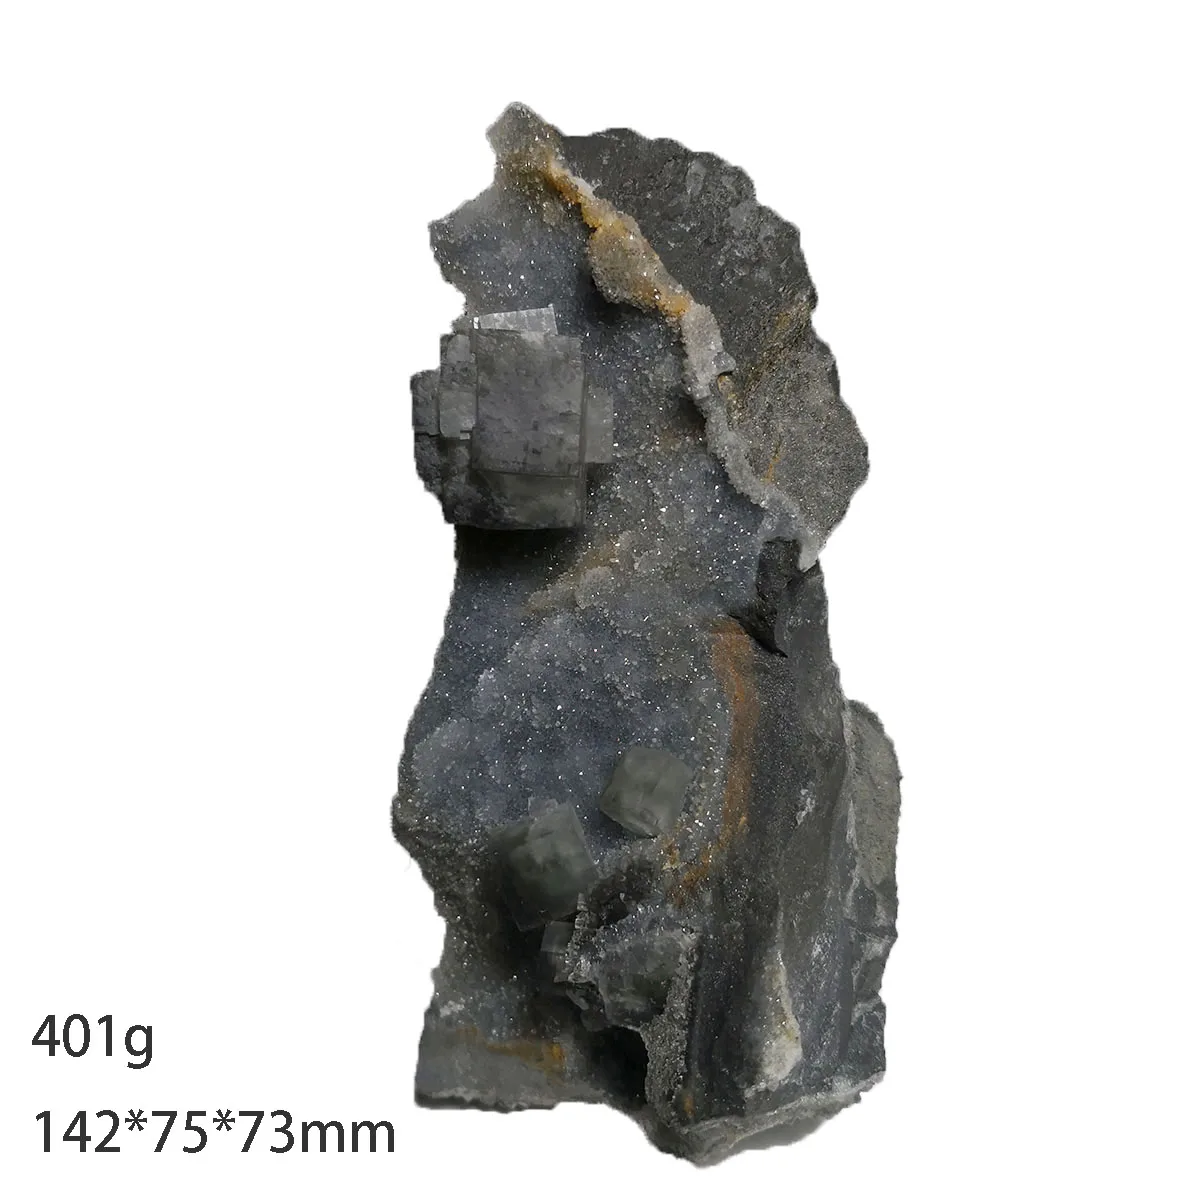 

401 г C8-2 натуральный зеленый флюорит, минеральный кристалл, образцы, подарки, украшения, коллекционные предметы из провинции Фуцзянь, Китай